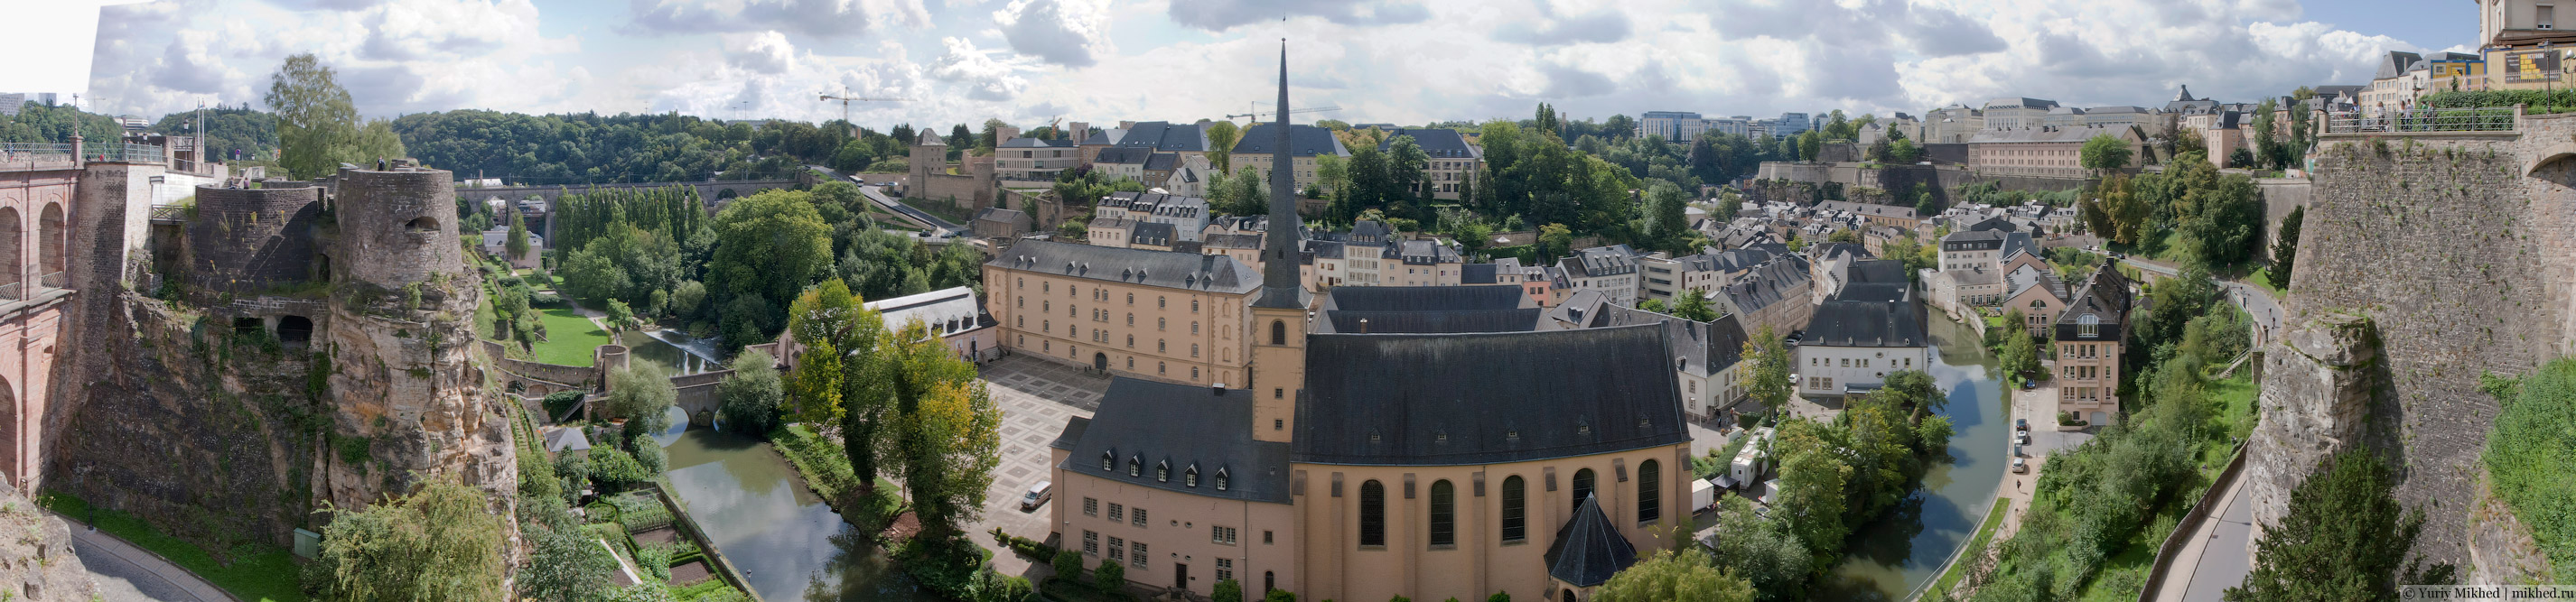 Панорама исторической части Люксембурга